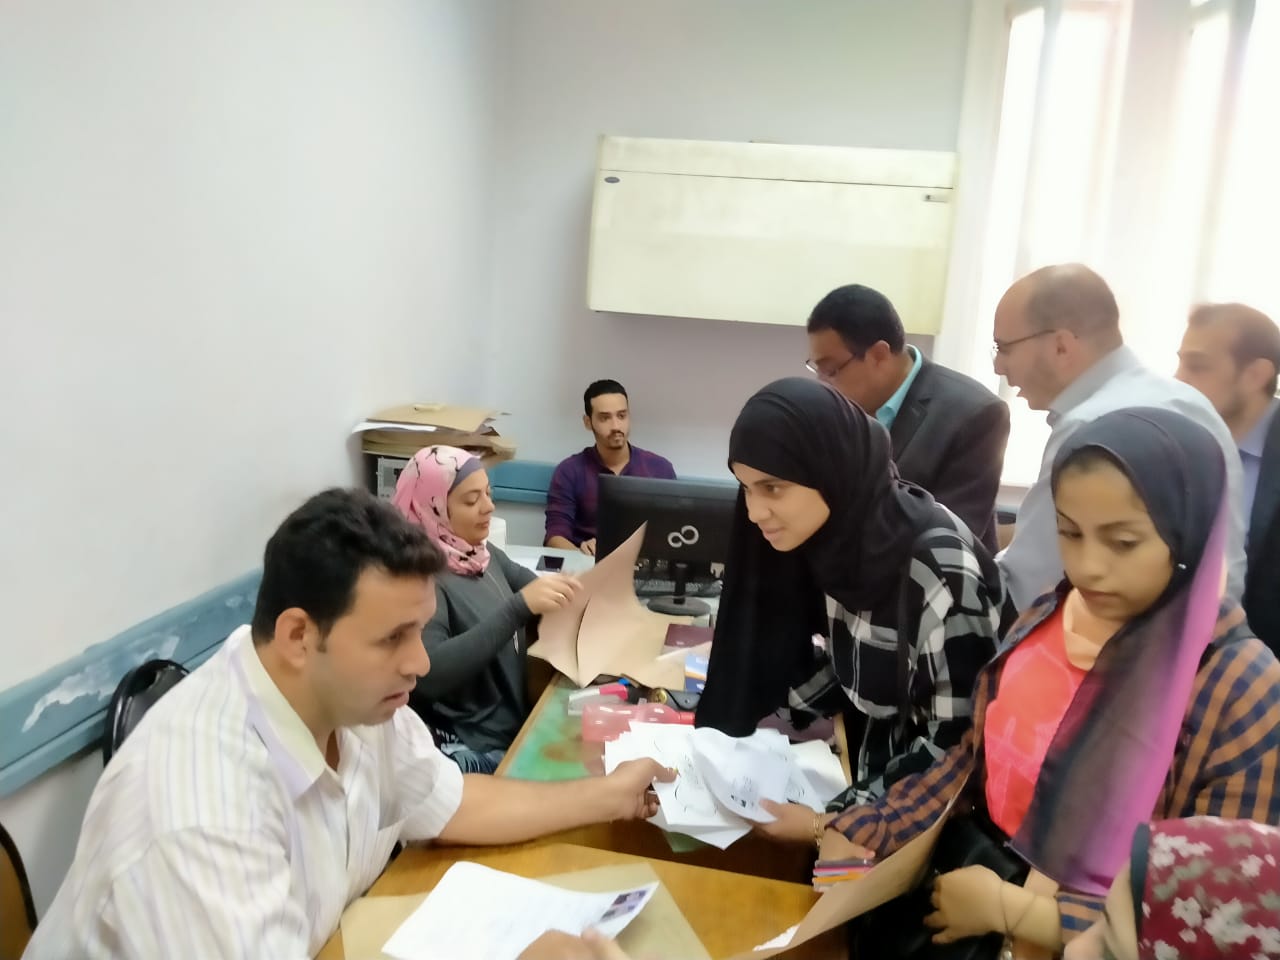 زحام بدار العلوم القاهرة لسحب استمارات الترشح لانتخابات اتحاد الطلاب (1)